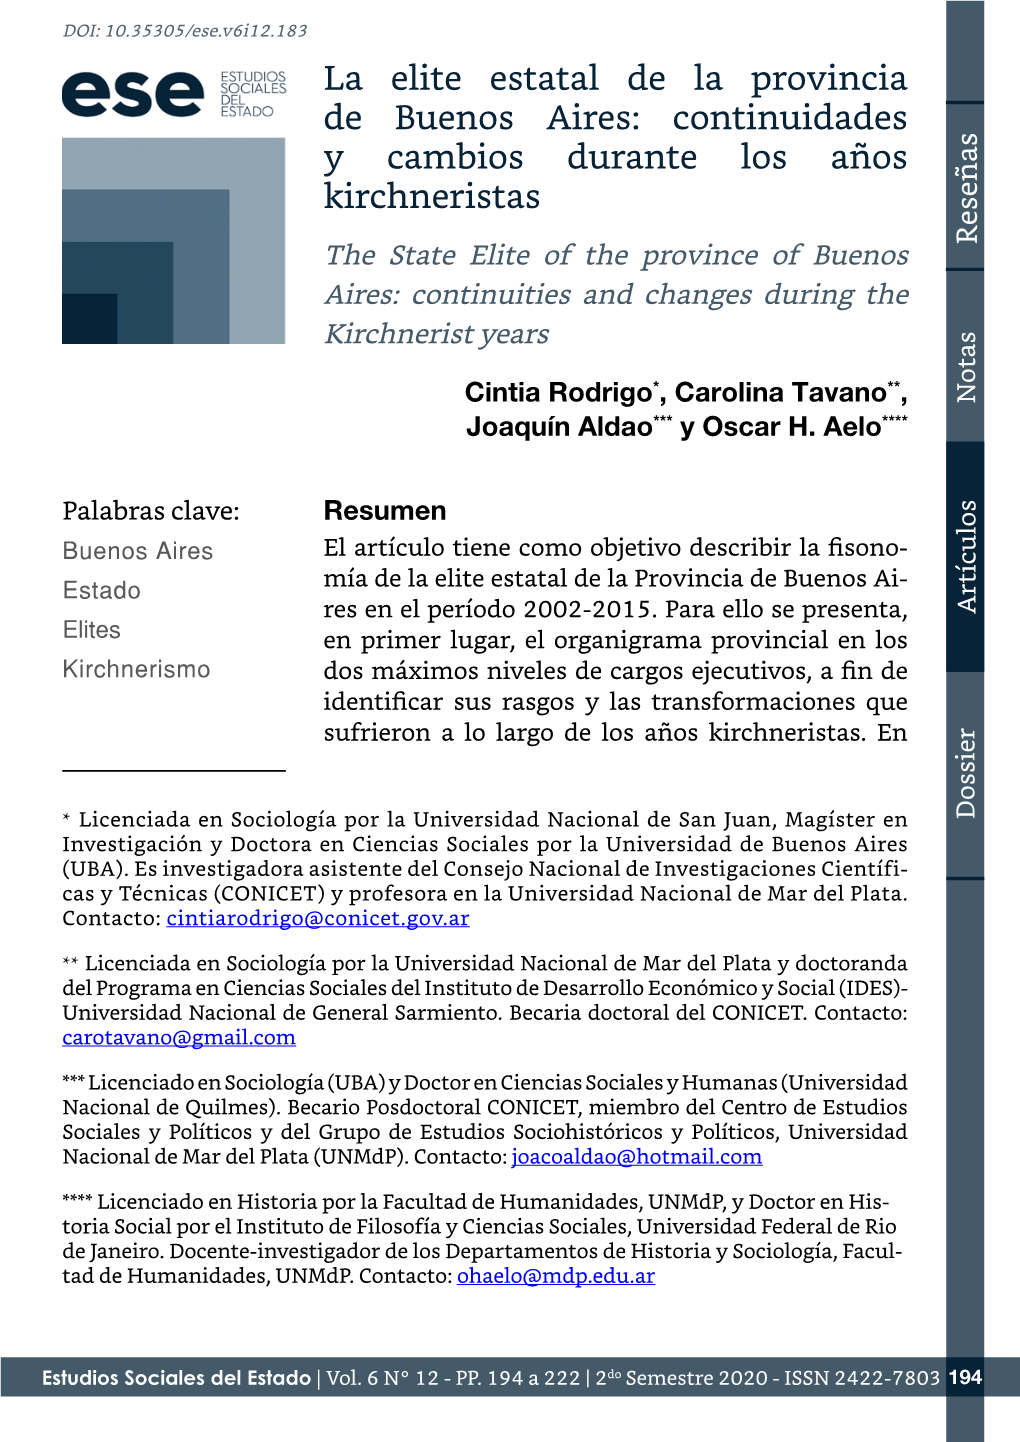 La Elite Estatal De La Provincia De Buenos Aires: Continuidades Y Cambios Durante Los Años Kirchneristas